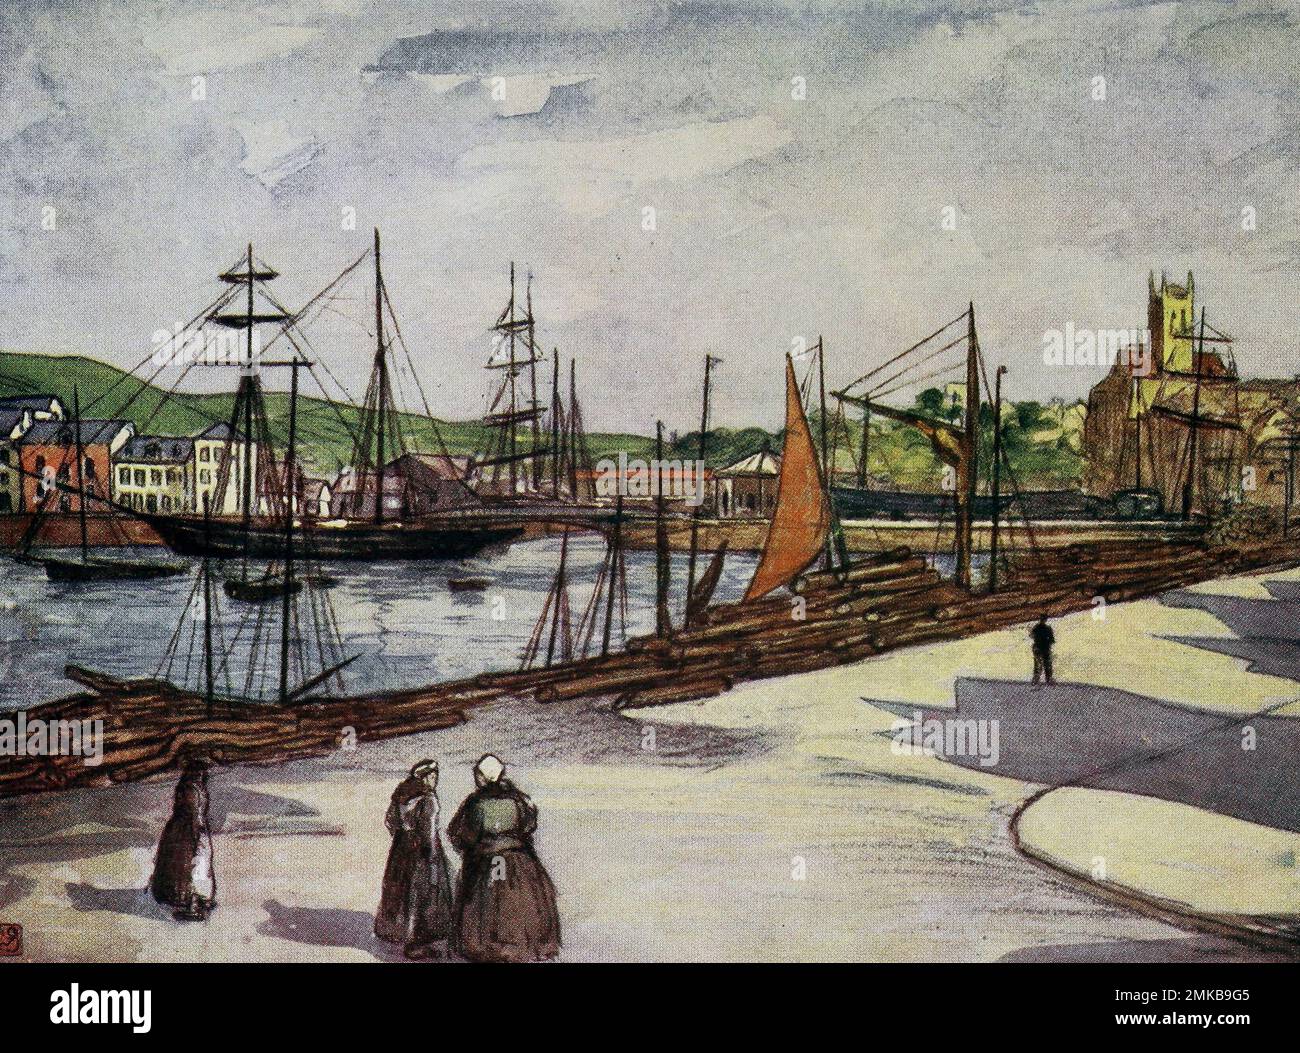 Hafen von Fecamp, Normandie, Frankreich, ca. 1900 Stockfoto